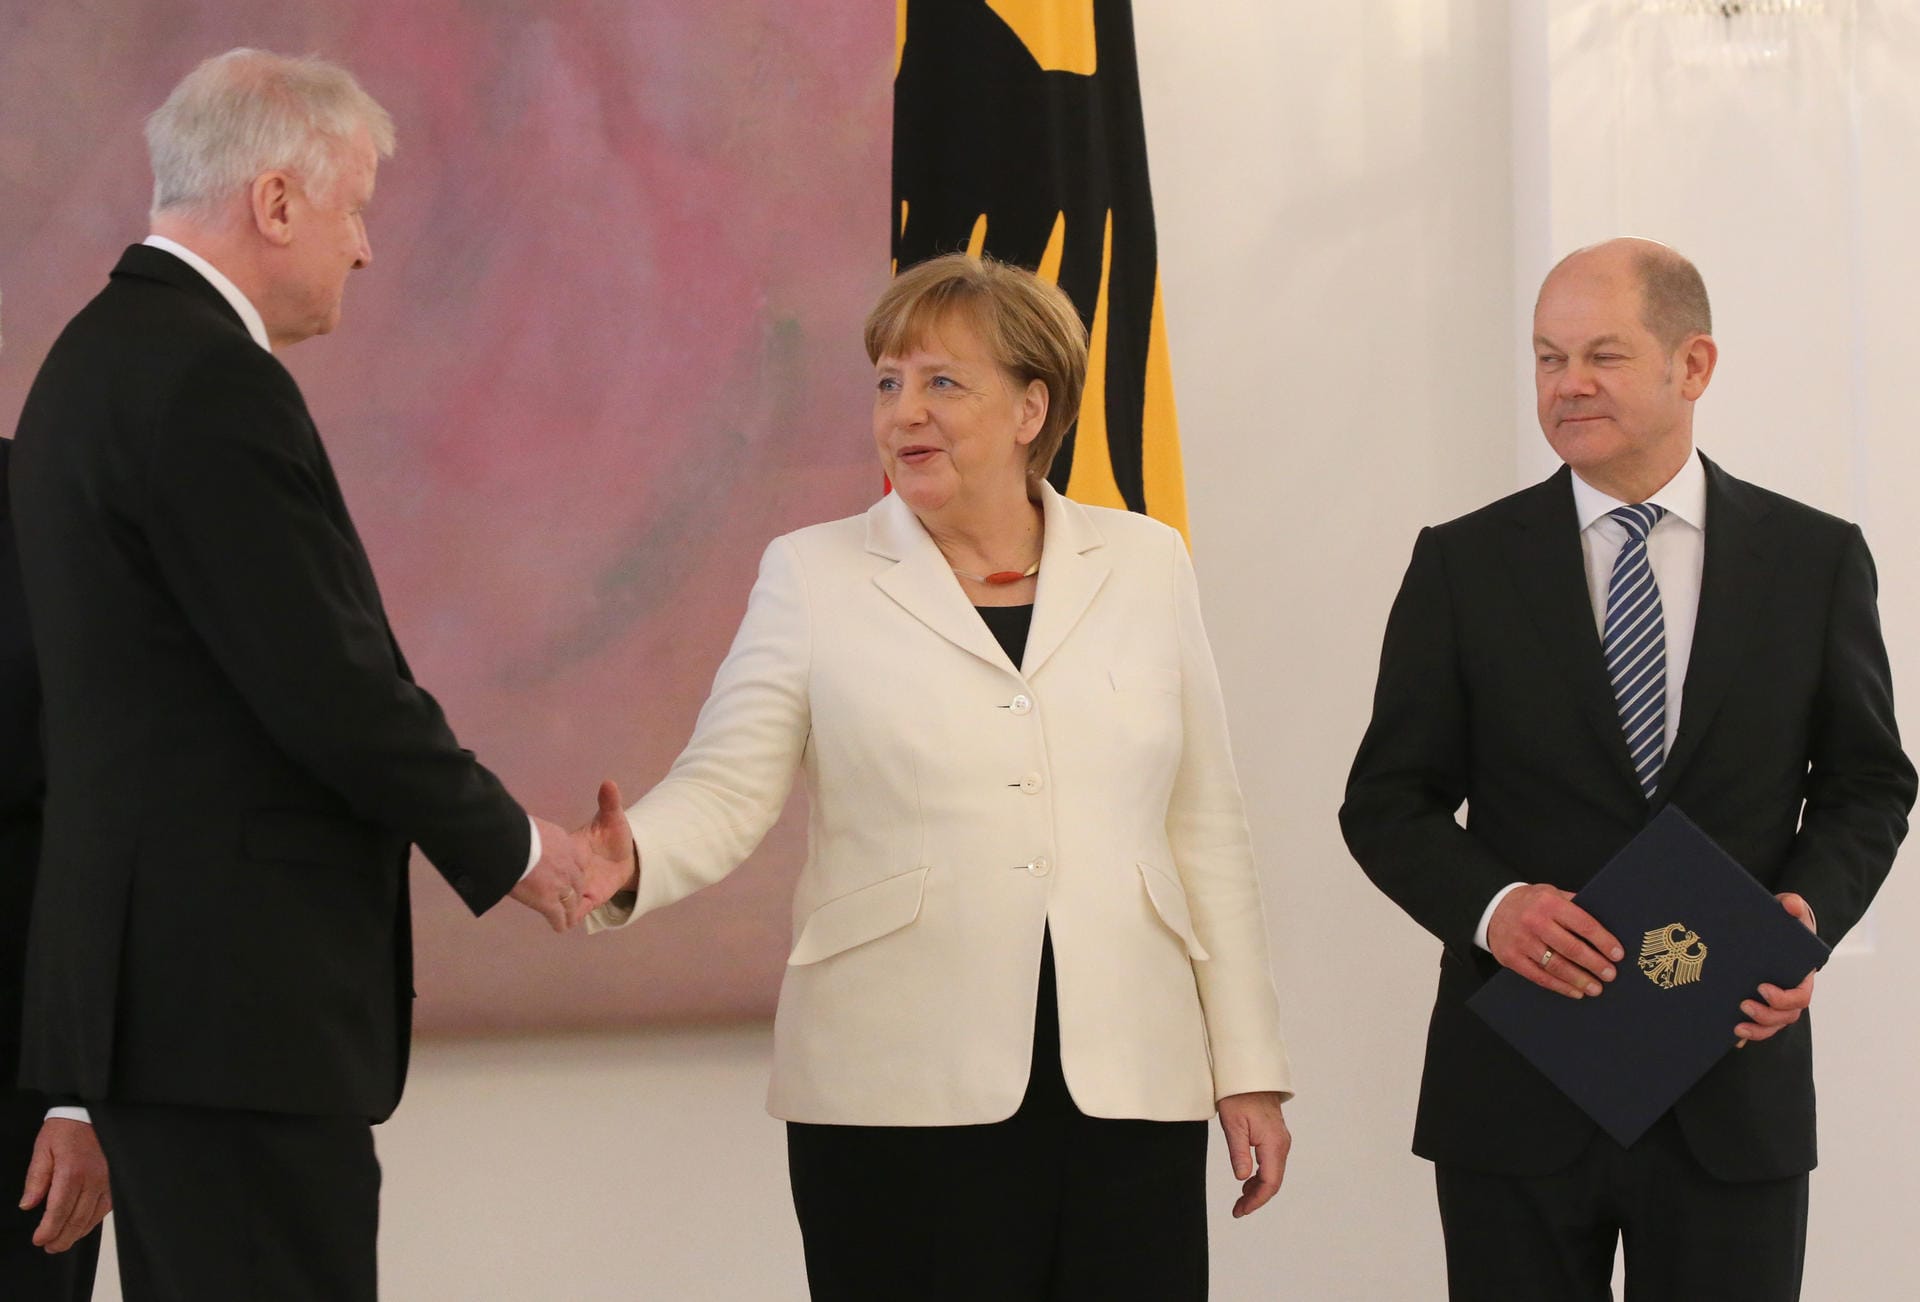 DDa kam er auf seinen Posten: Angela Merkel gratuliert Horst Seehofer zu seiner Ernennung zum Bundesminister für Inneres, Heimat und Bau.